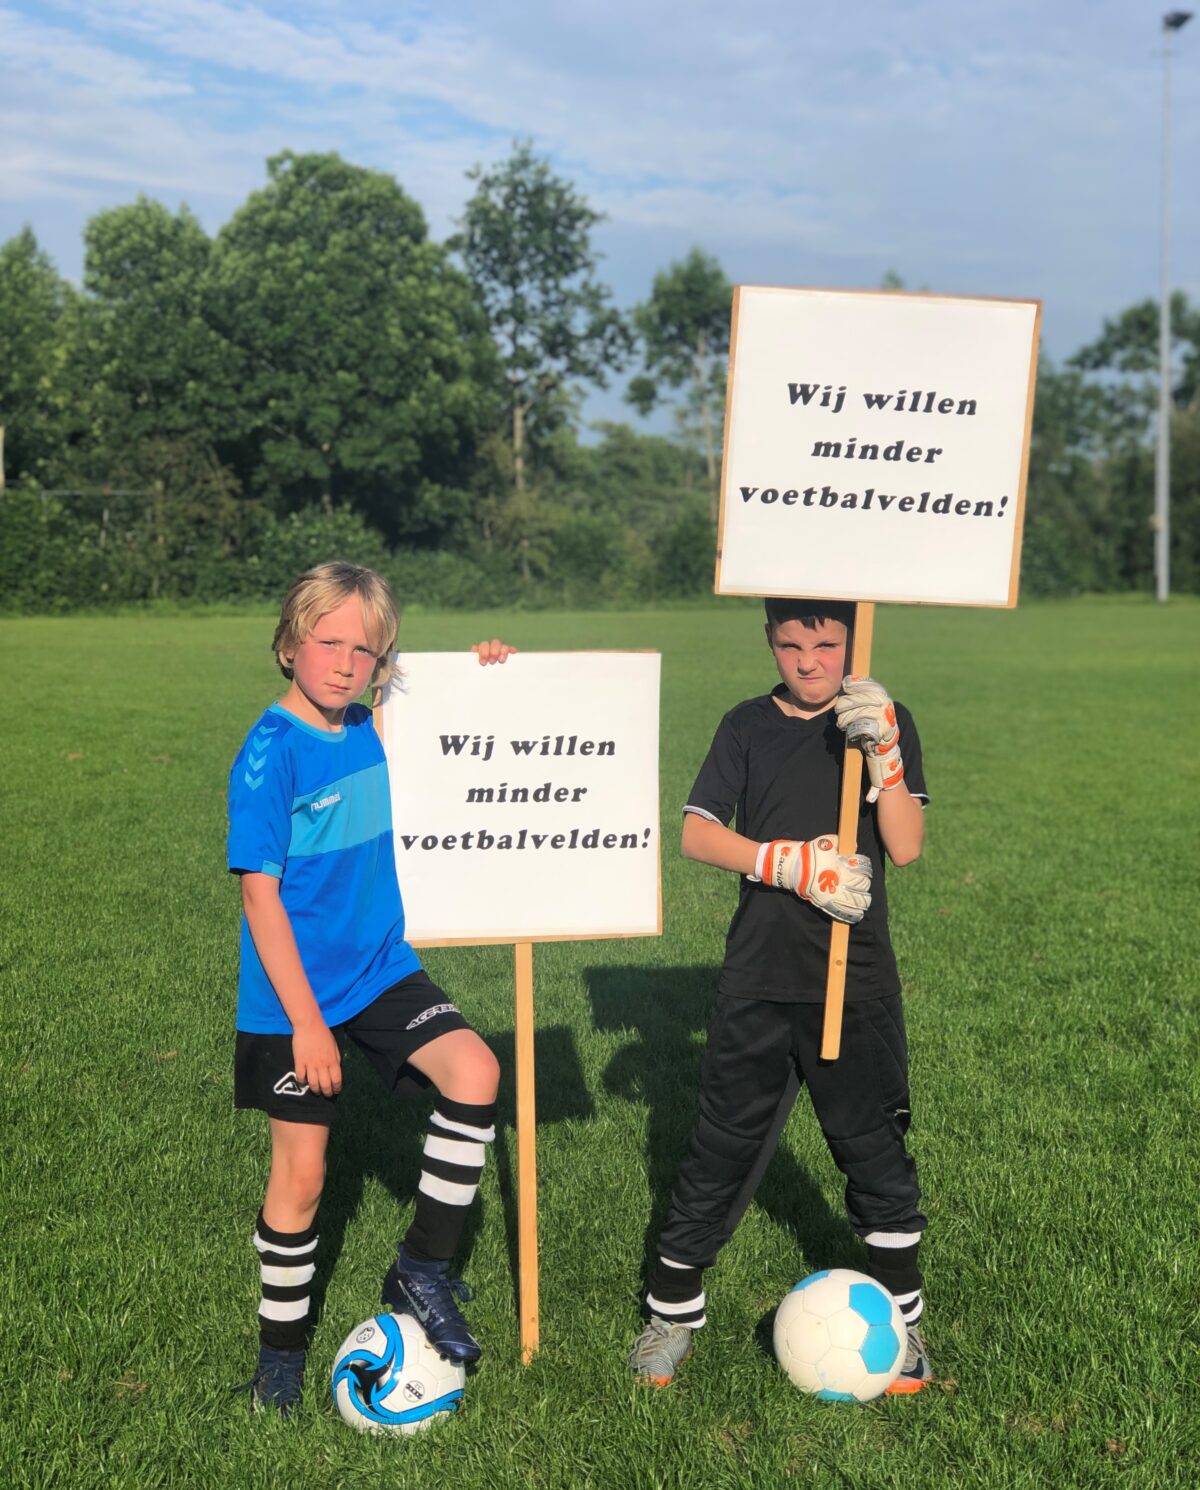 Friese Voetafdruk pleit voor minder voetbalvelden